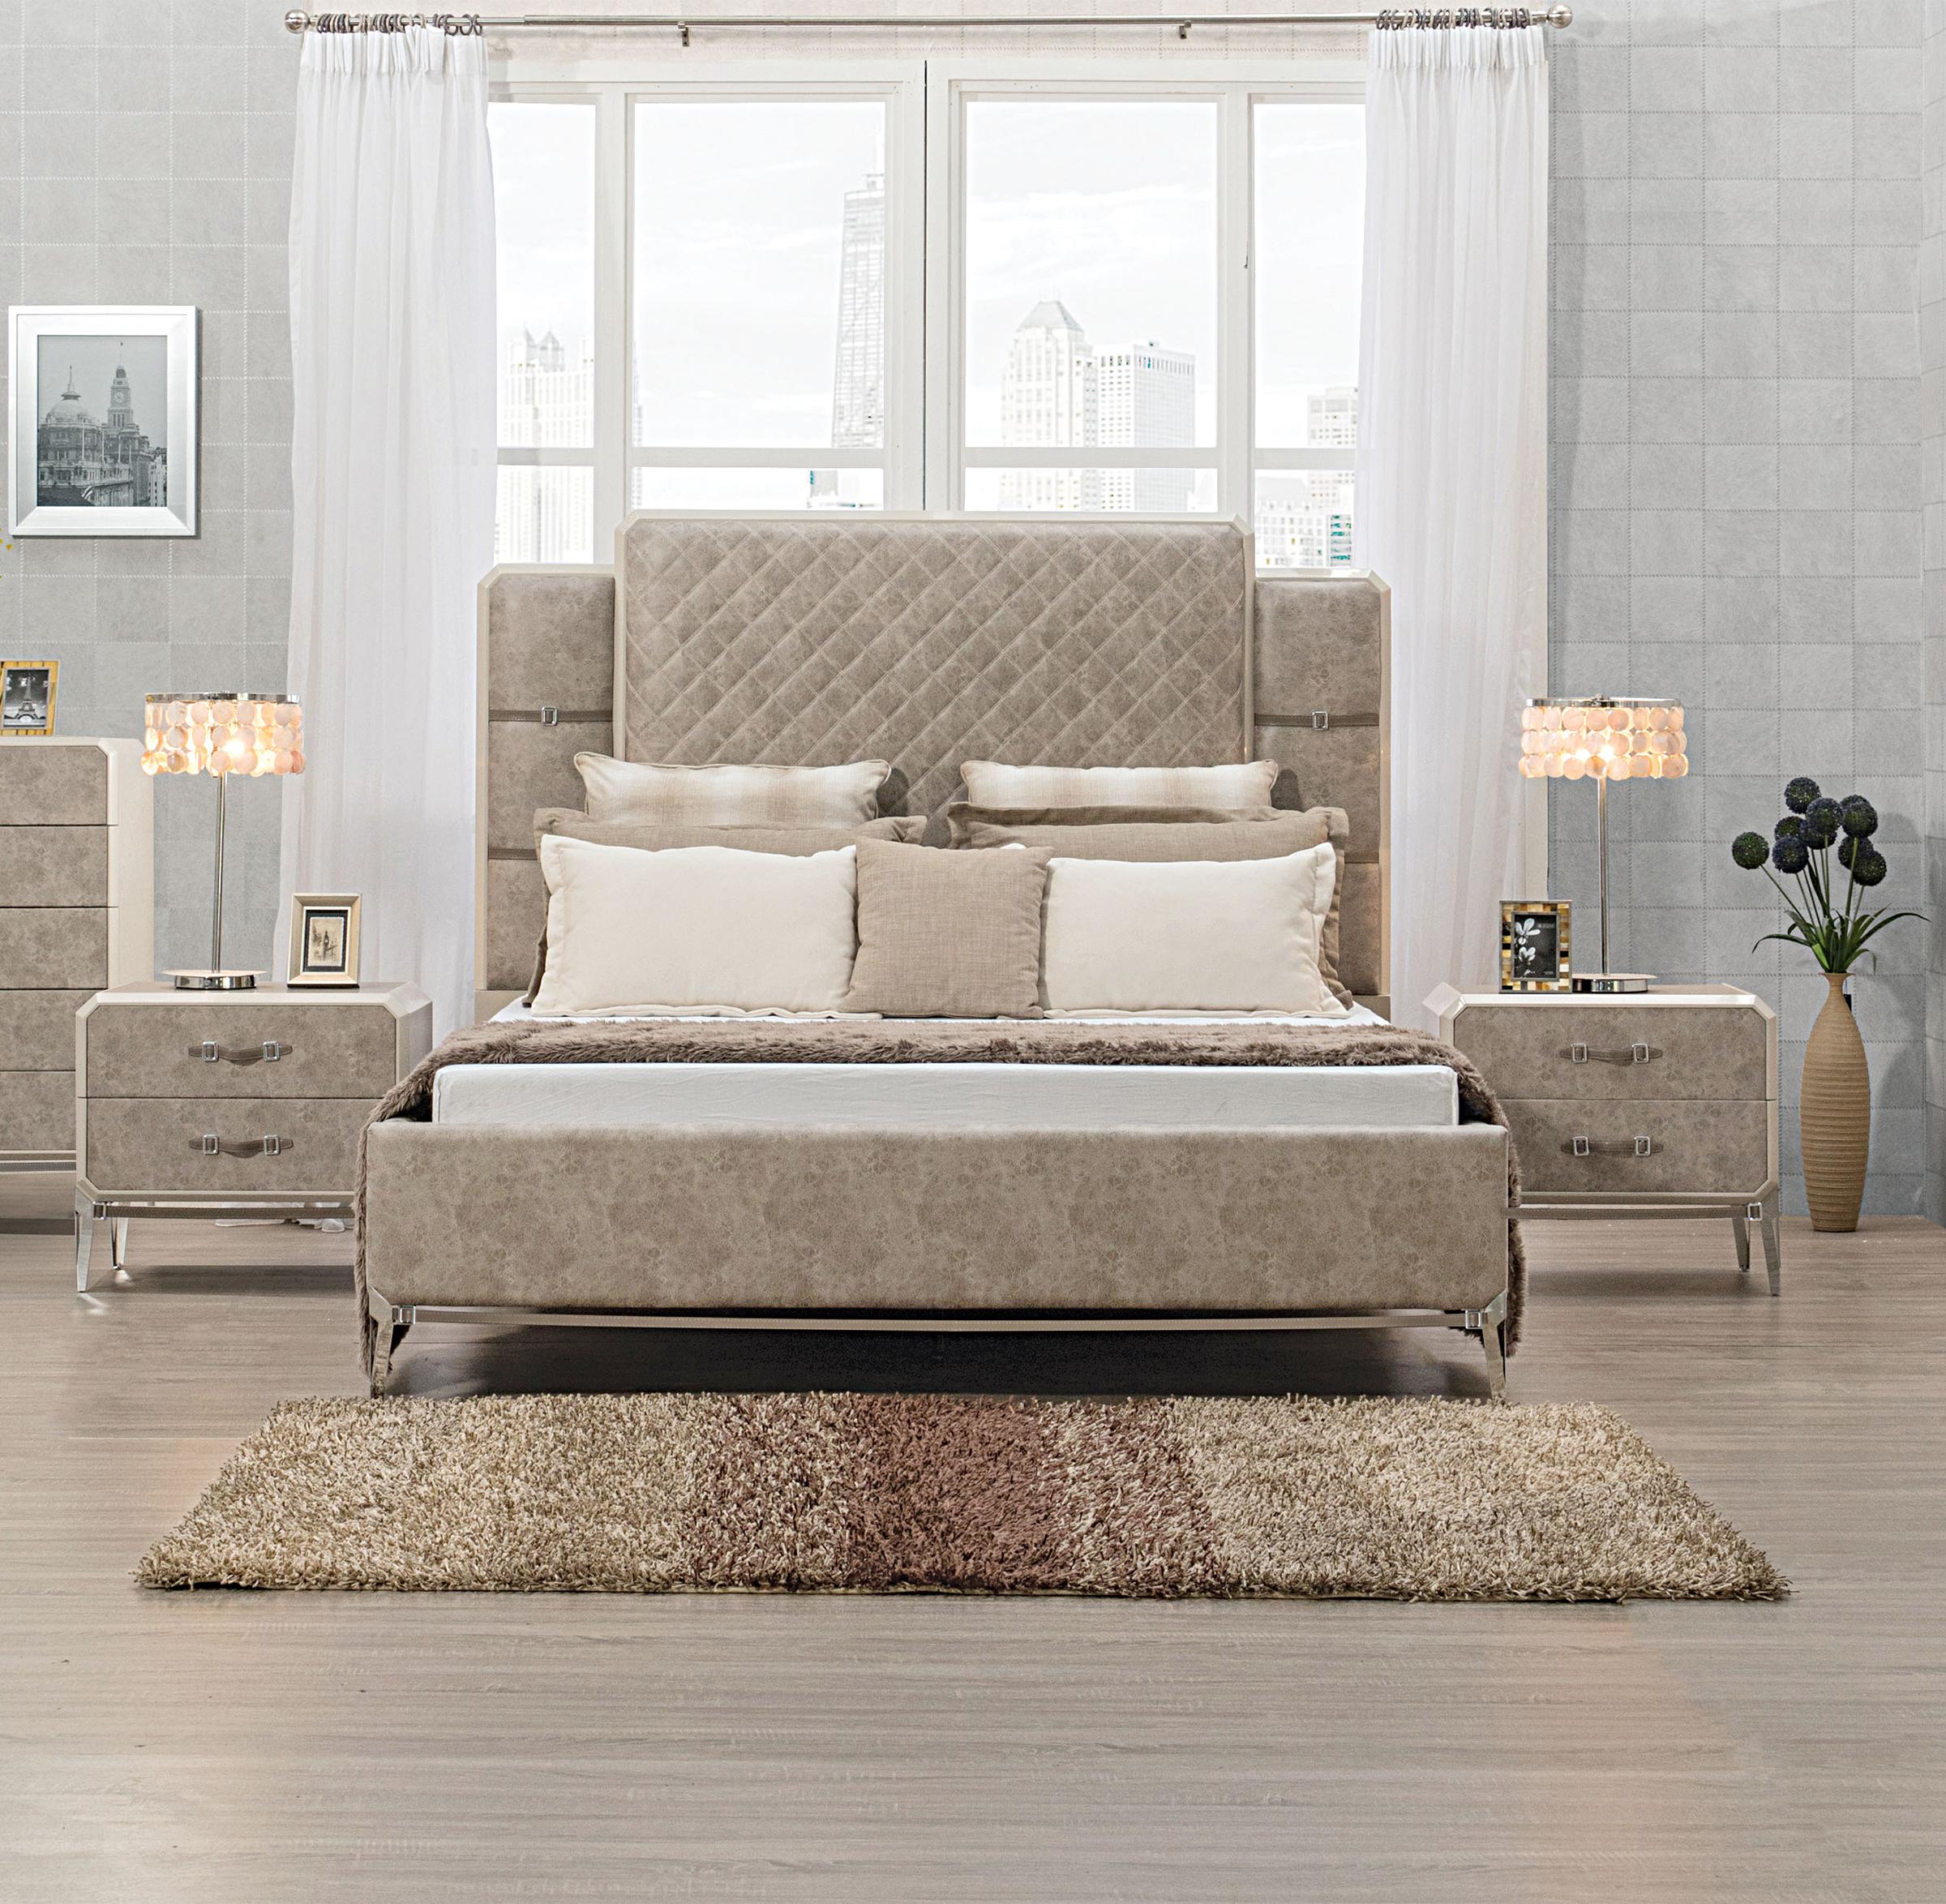 Contemporary, Modern Platform Bedroom Set Kordal Kordal-27200Q-Set-3 in Beige Leatherette